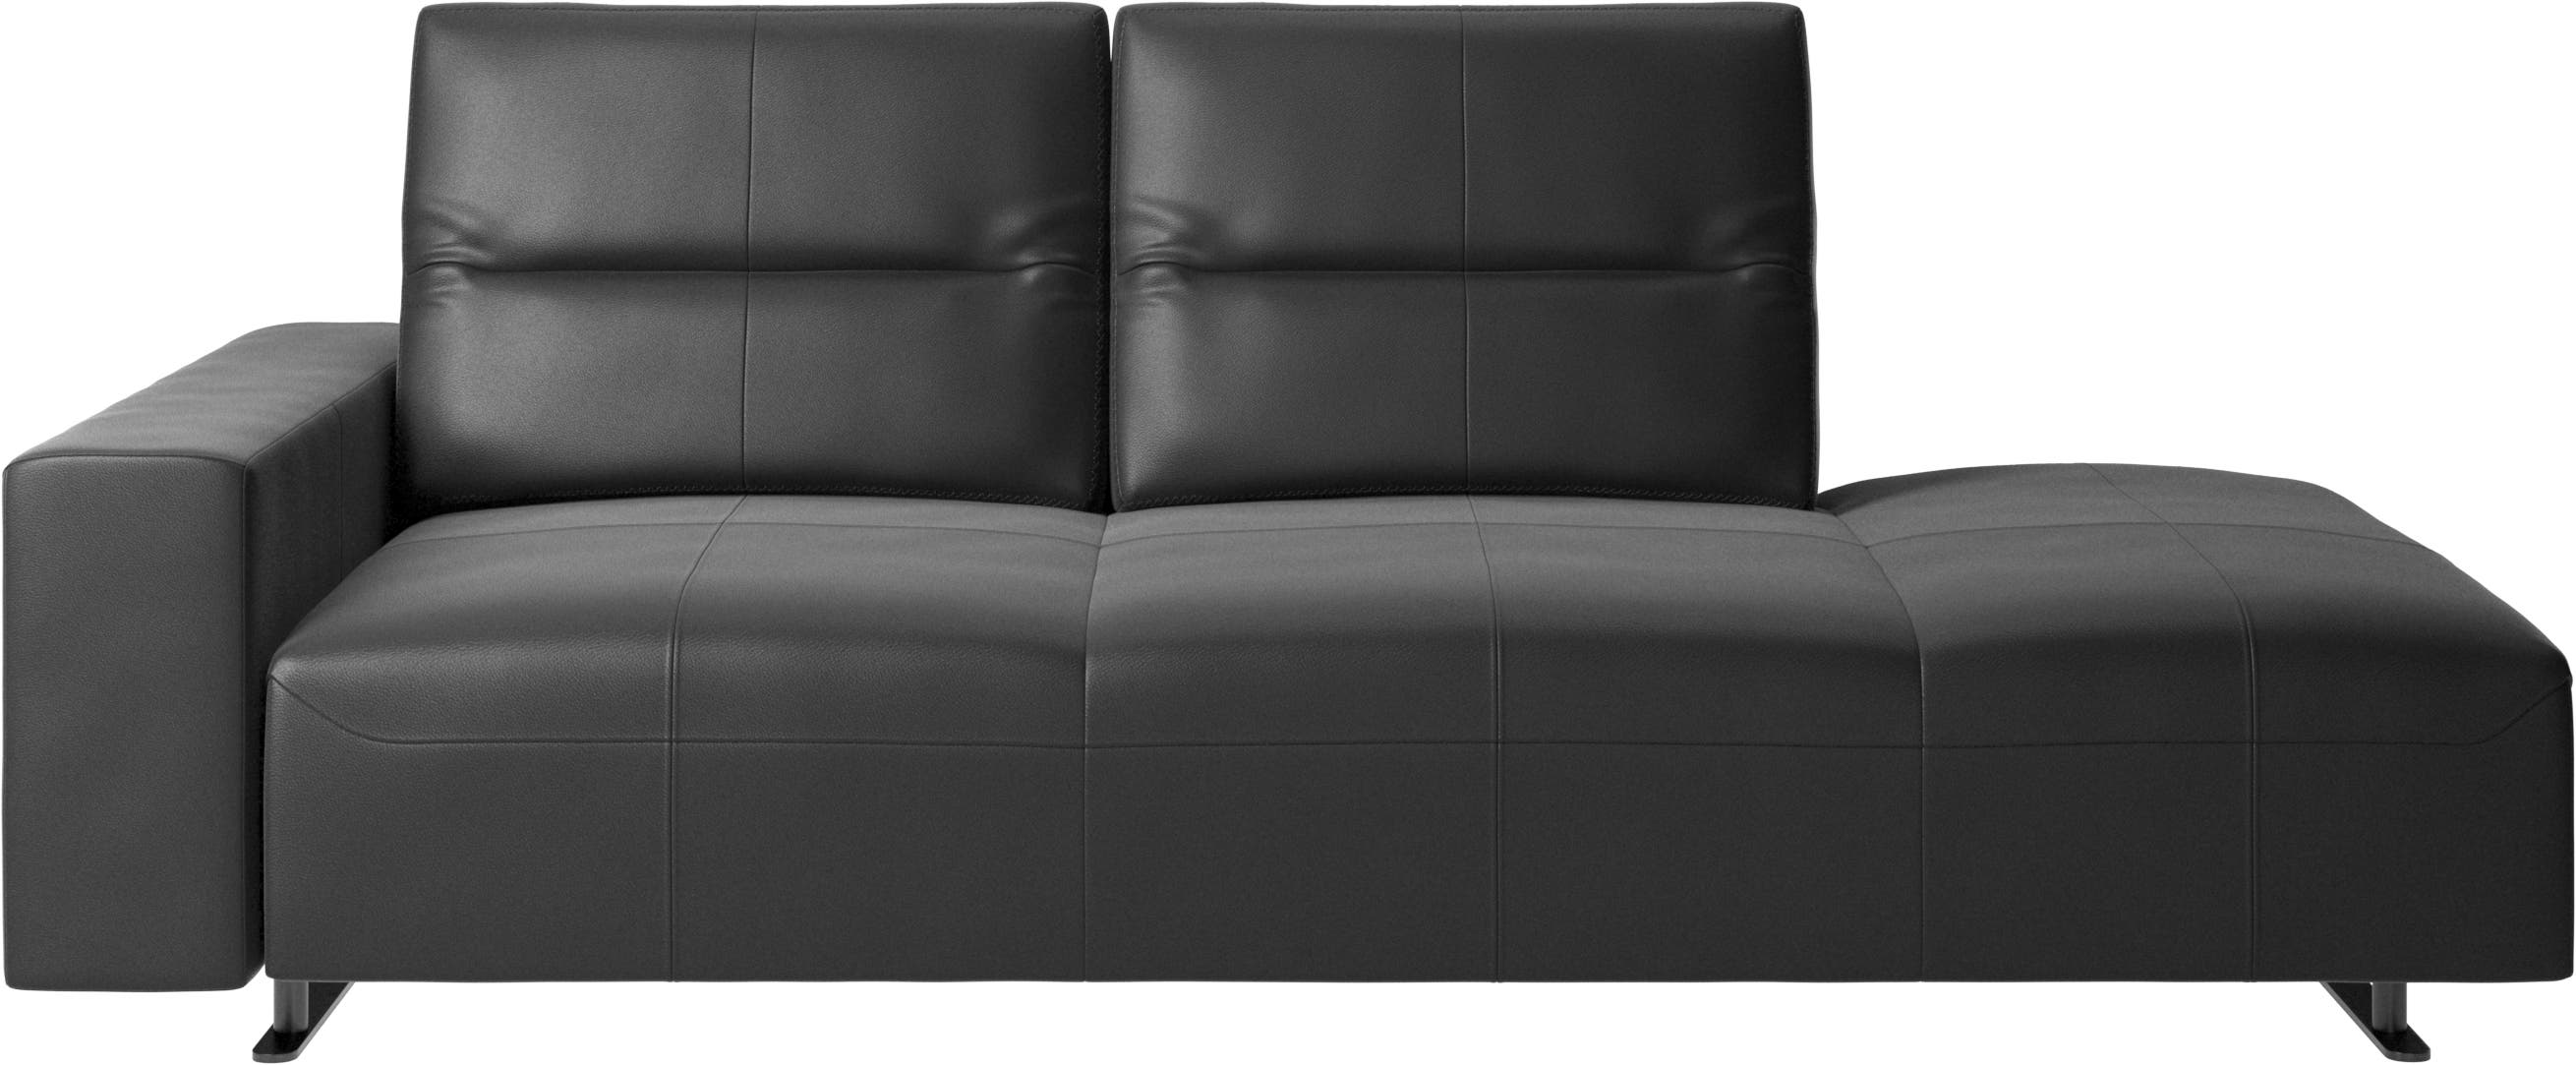 Sofá Hampton com encosto ajustável com módulo de descanso do lado direito, armazenamento e apoio de braços lado esquerdo